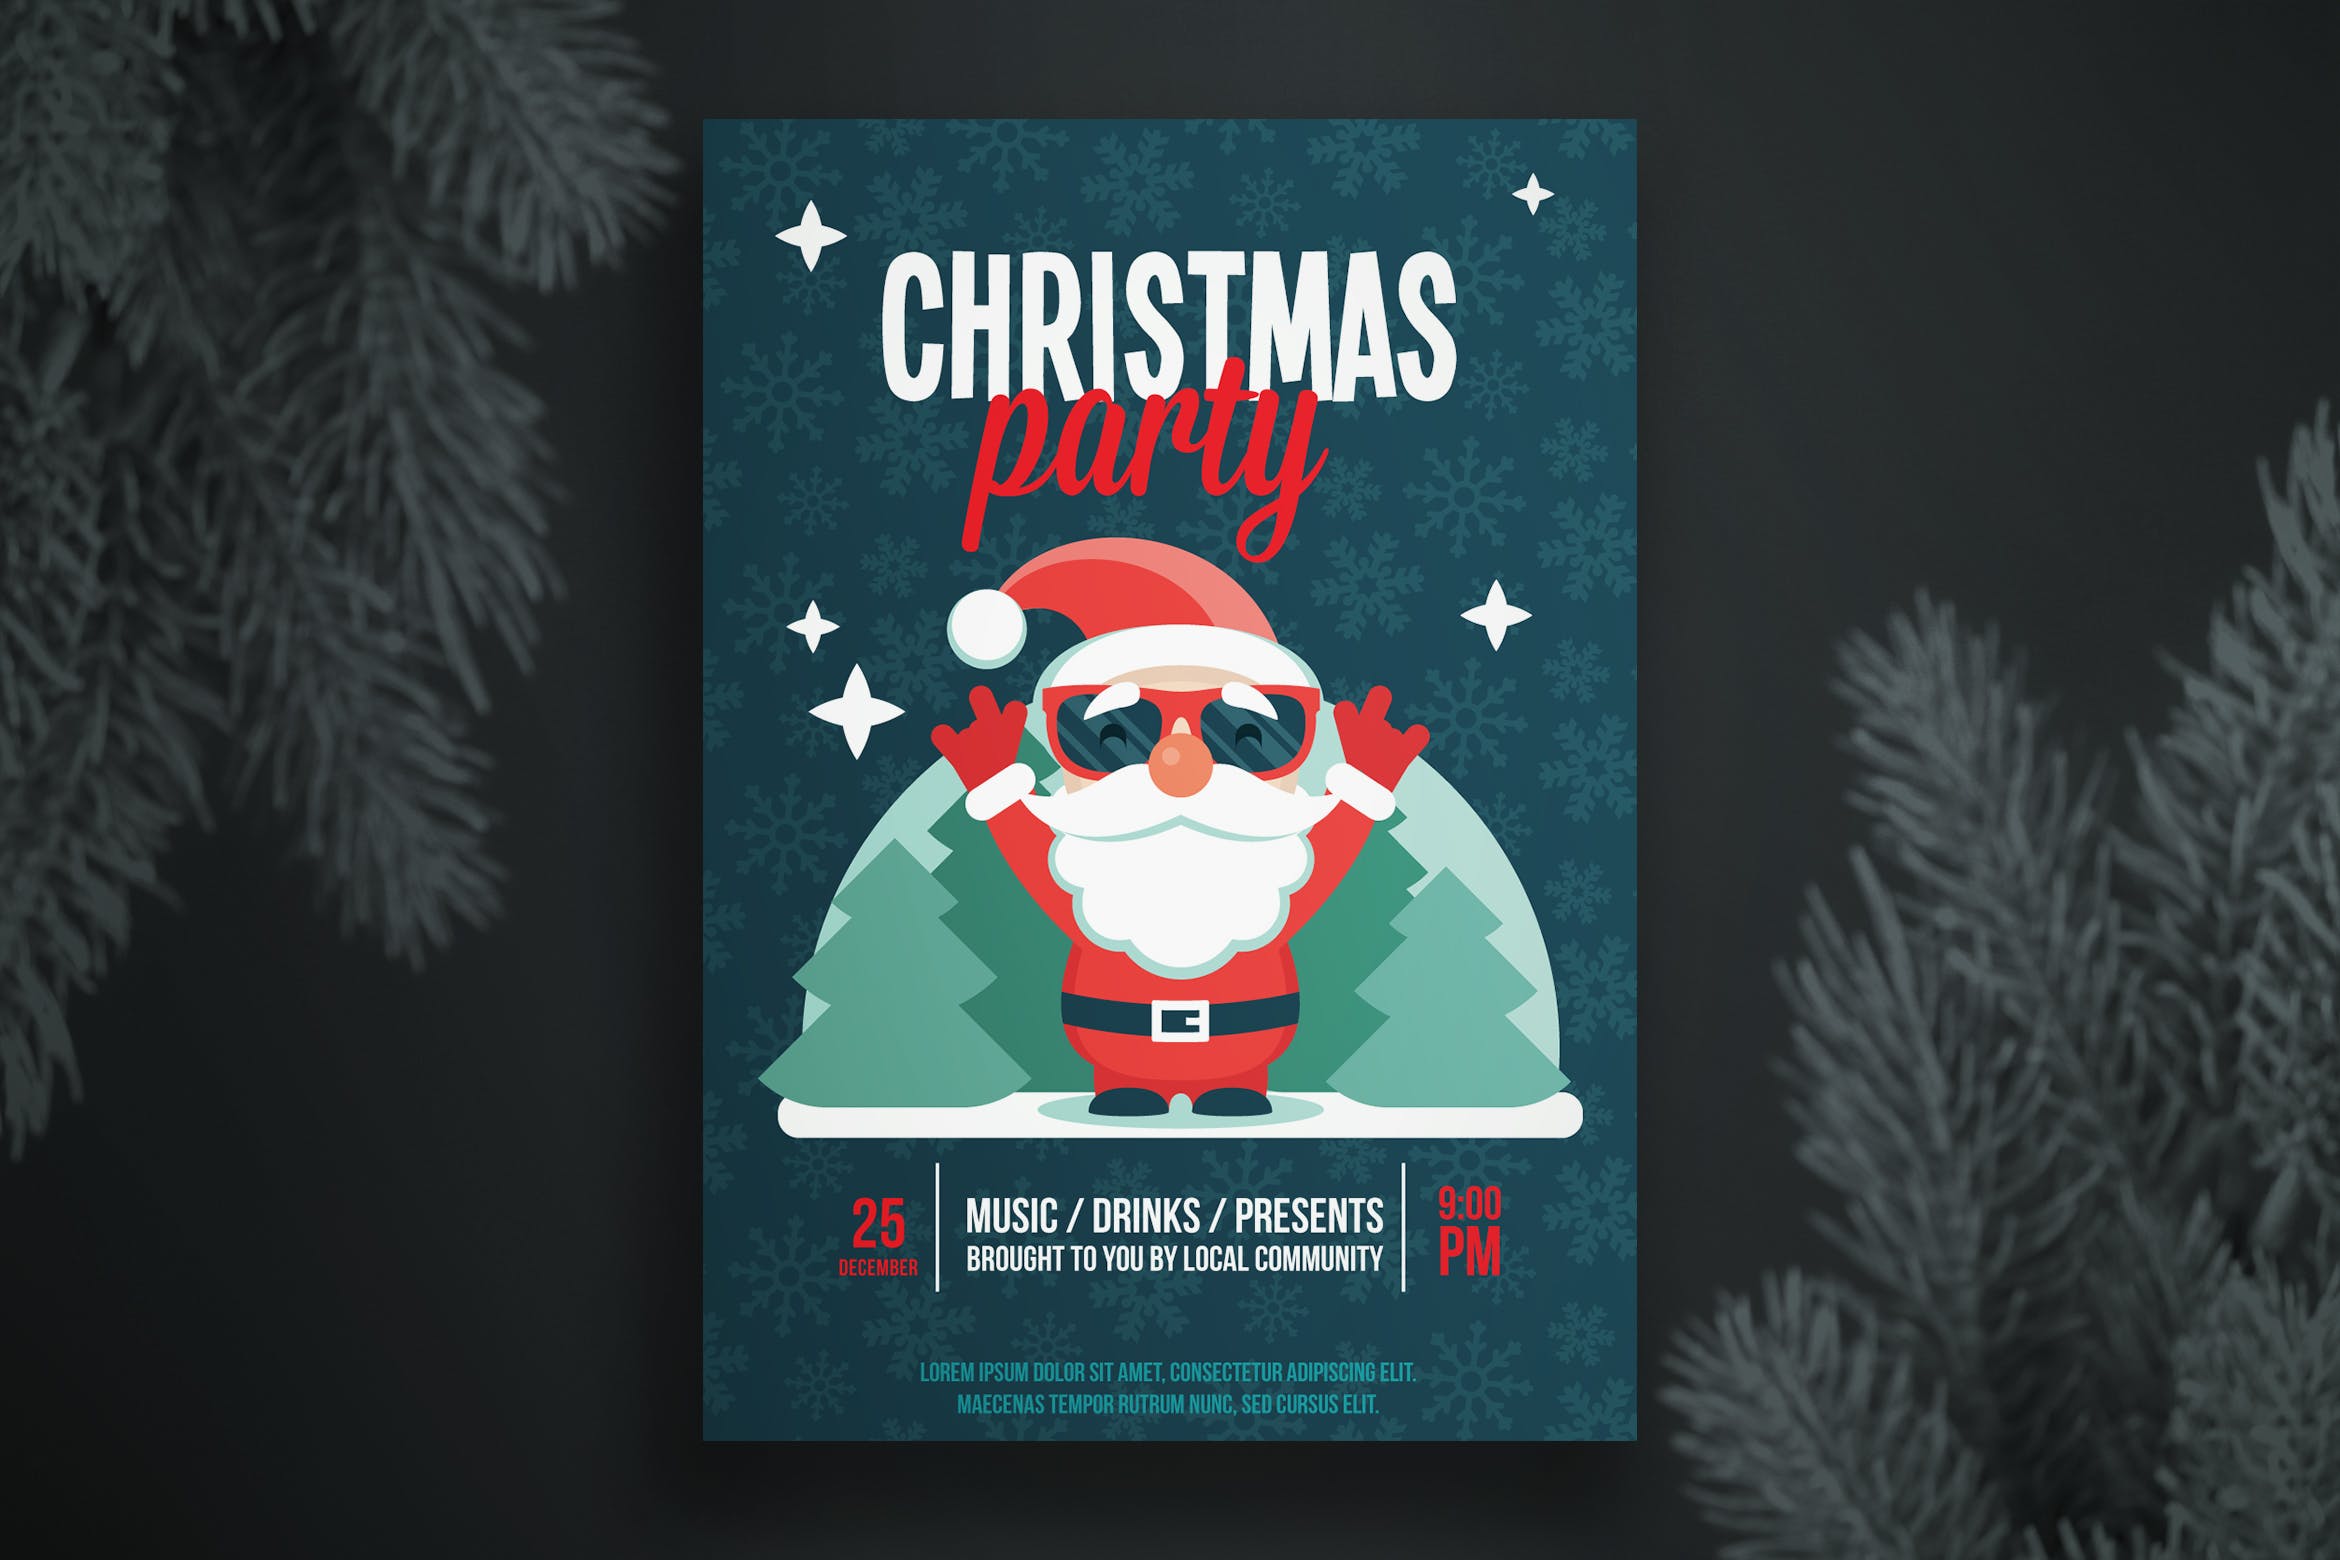 戴墨镜的圣诞老人圣诞节派对海报设计模板 Christmas party flyer template插图